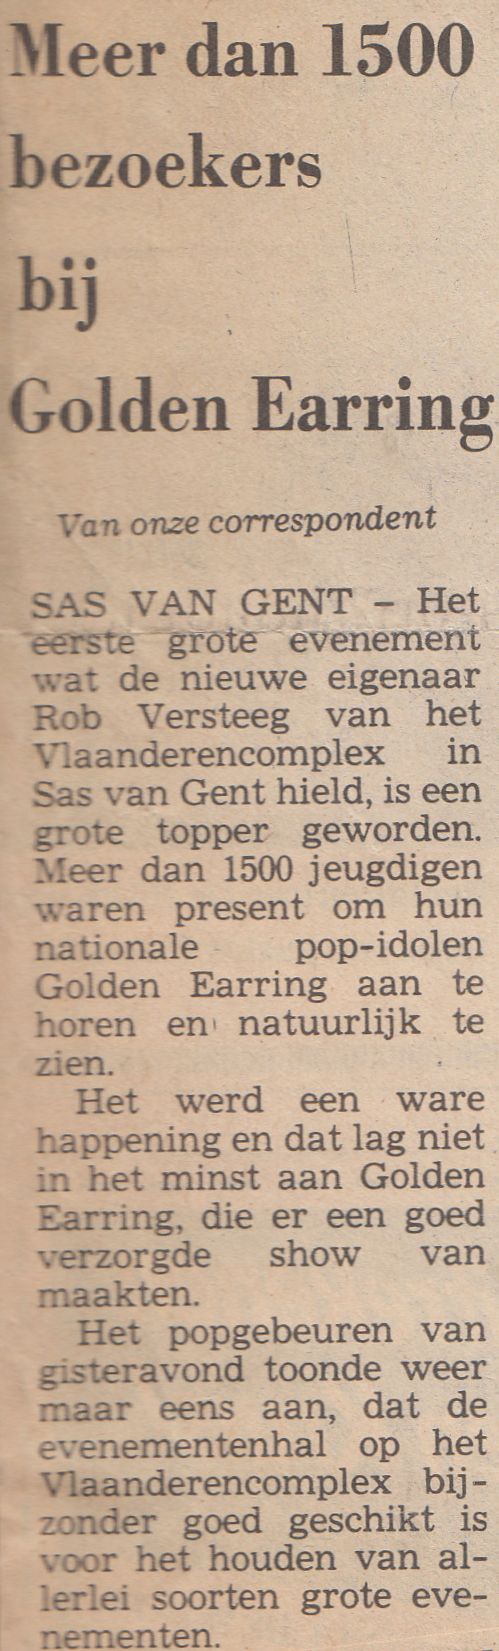 Golden Earring show review De stem van Zeeland newspaper for December 10, 1982 Sas van Gent - Vlaanderenhal show